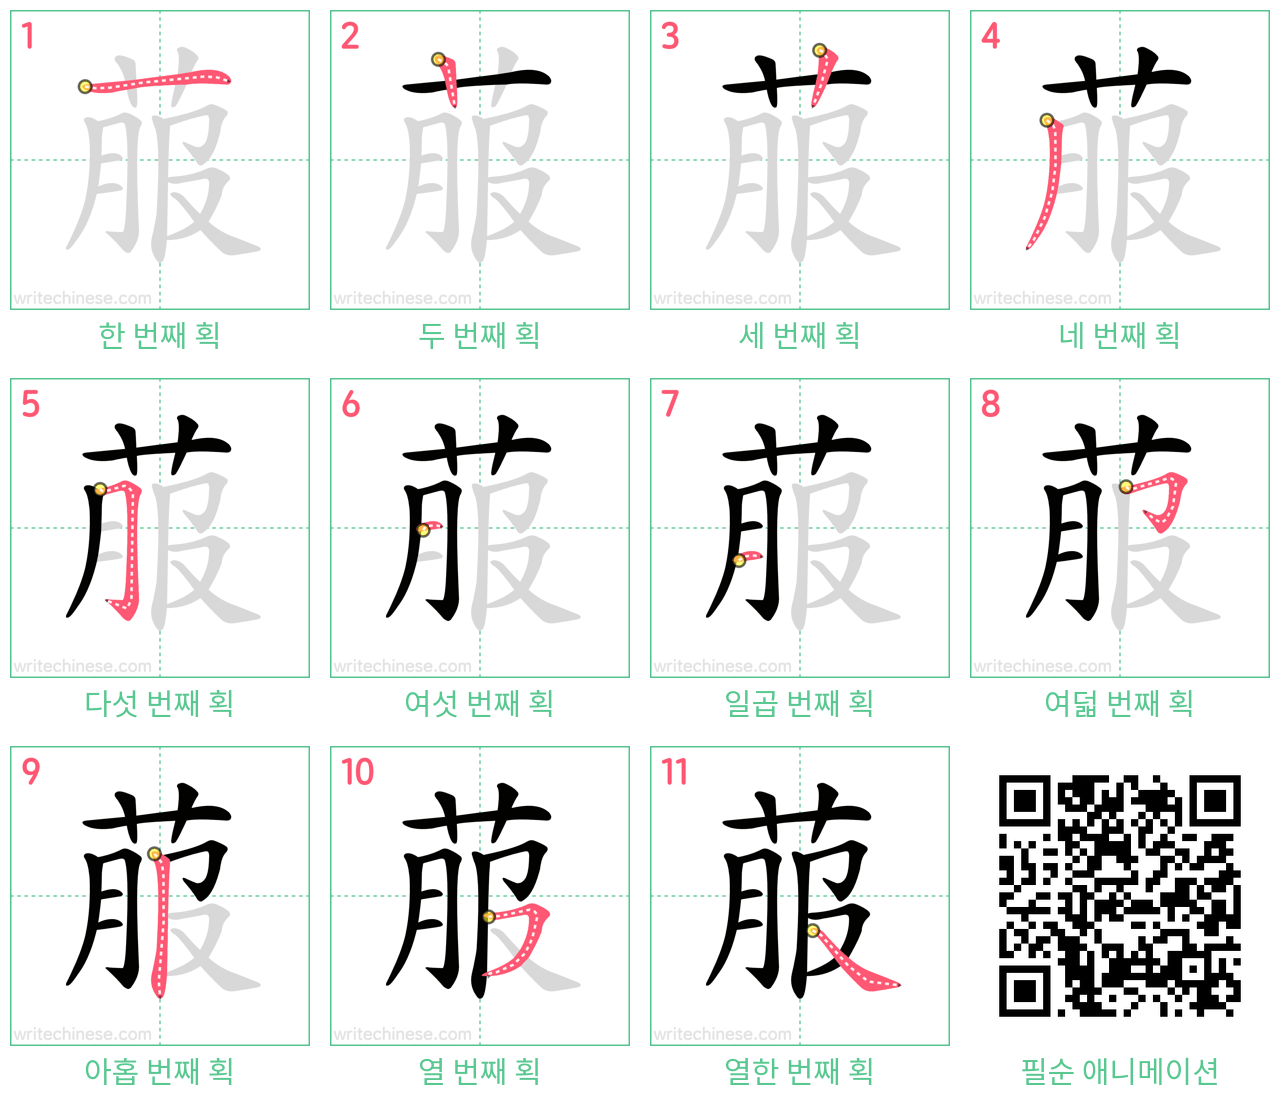 菔 step-by-step stroke order diagrams